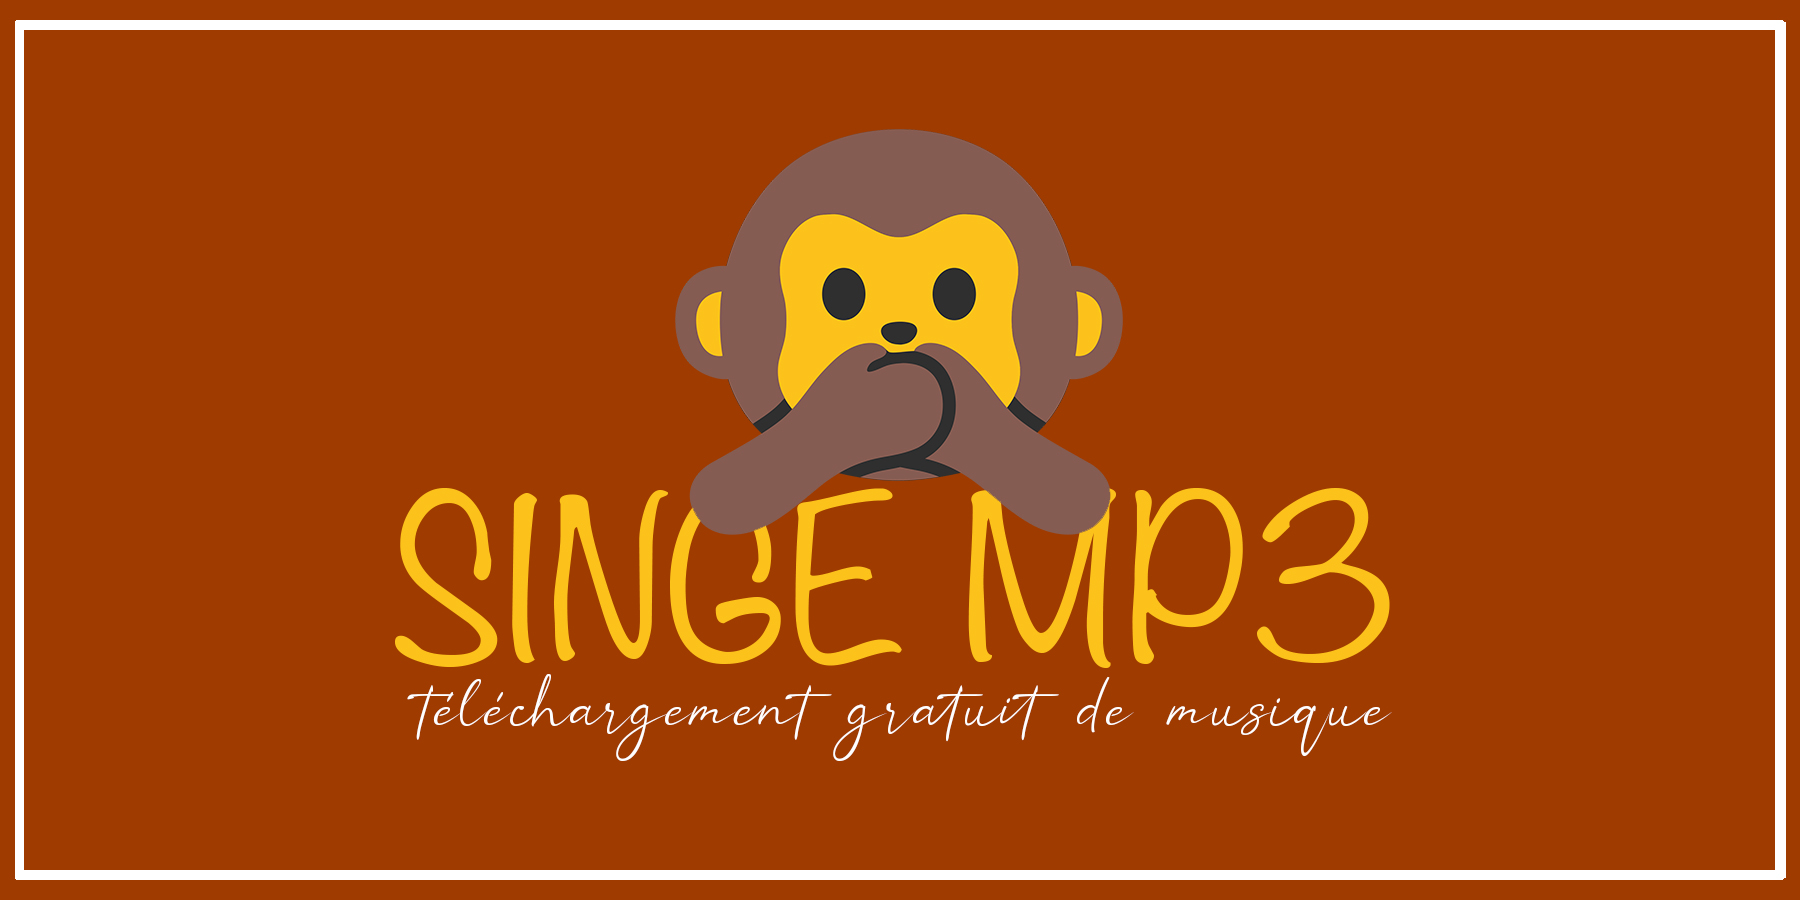 माकड MP3: MP3 संगीत मोफत डाउनलोड करण्यासाठी नवीन पत्ता